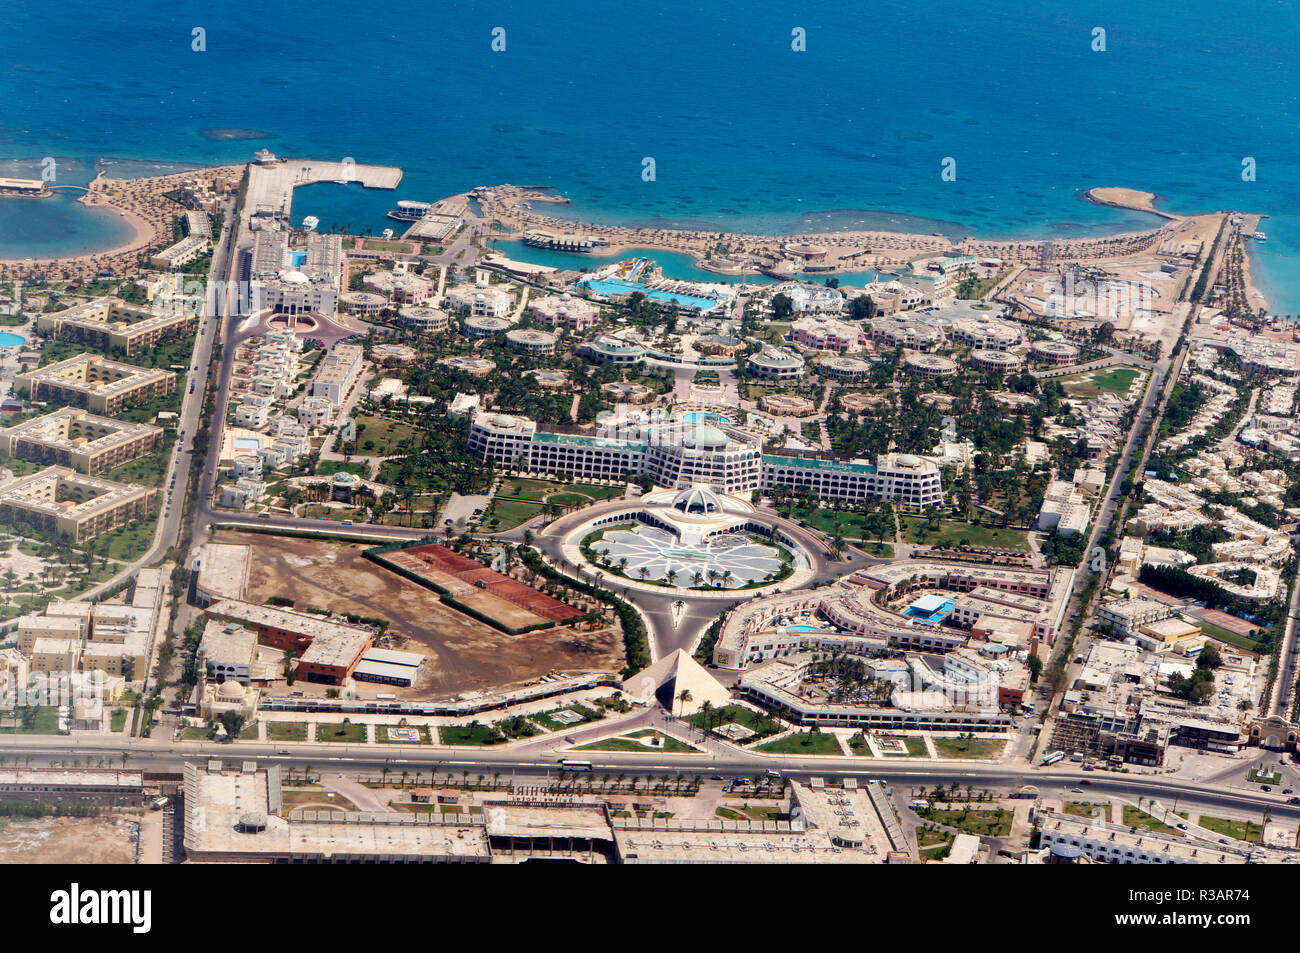 hotel facilities at hurghada Stock Photo